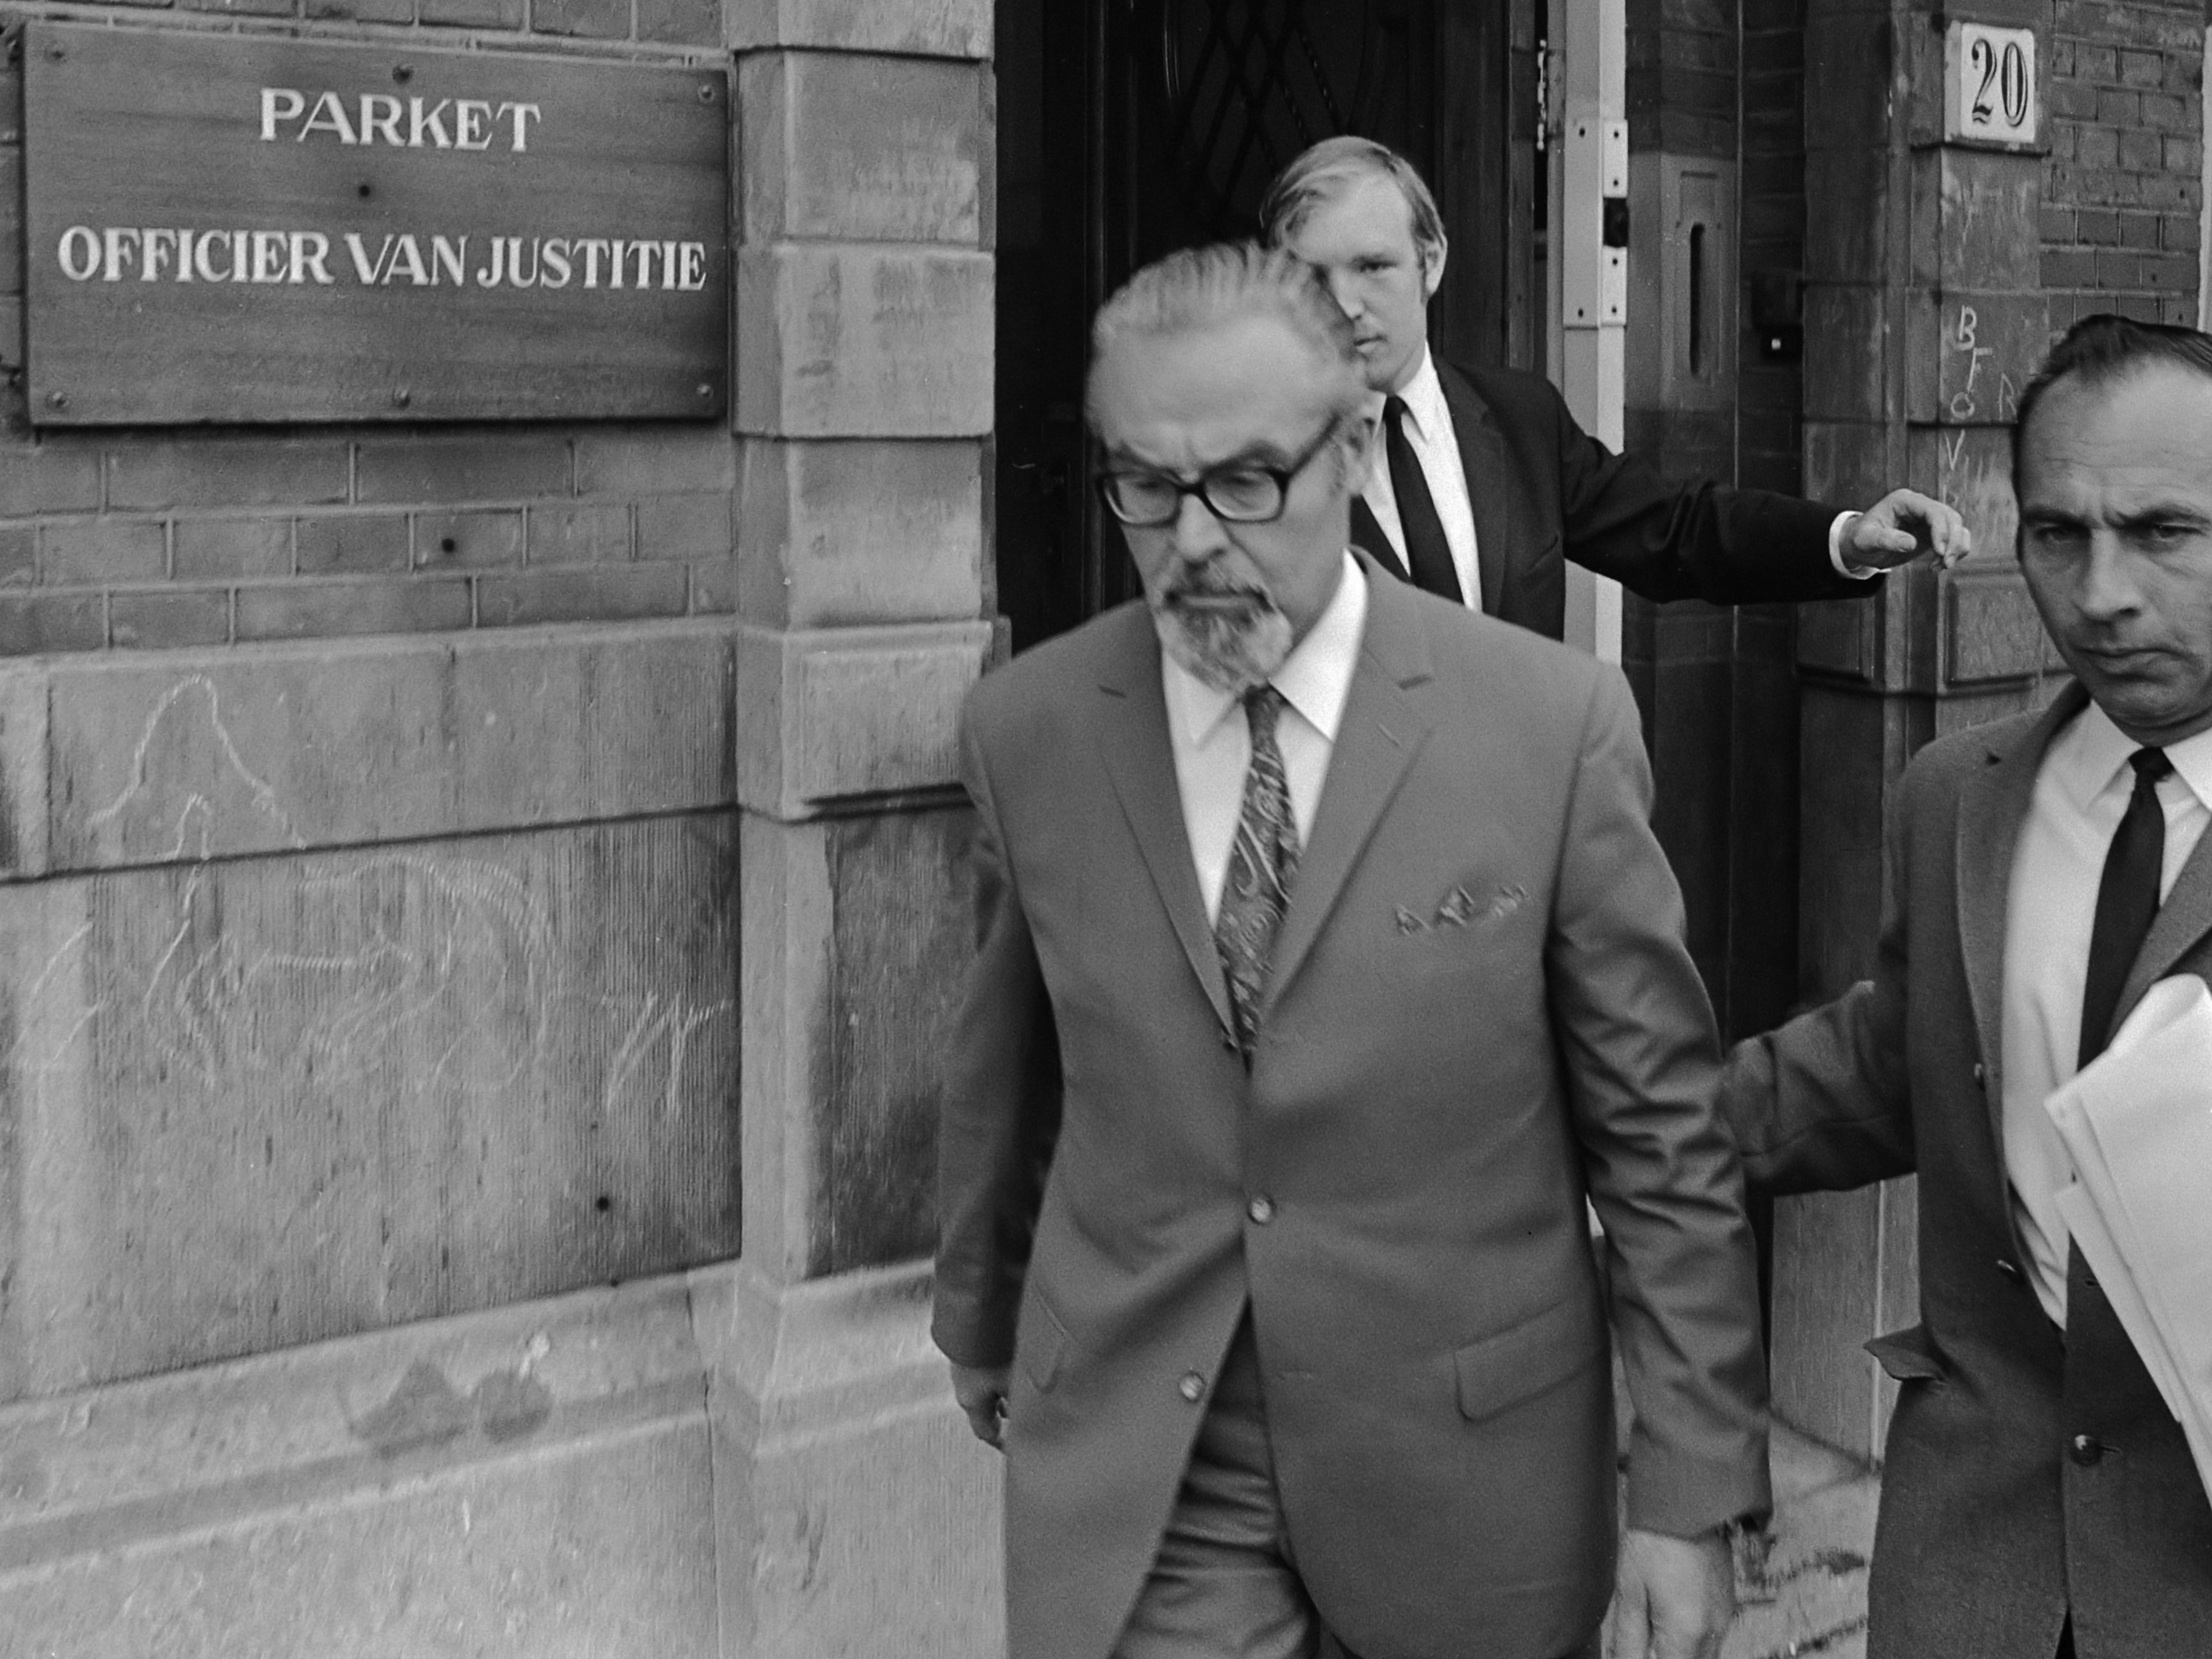 Verwey verlaat het gebouw van de Officier van Justitie
*24 mei 1971